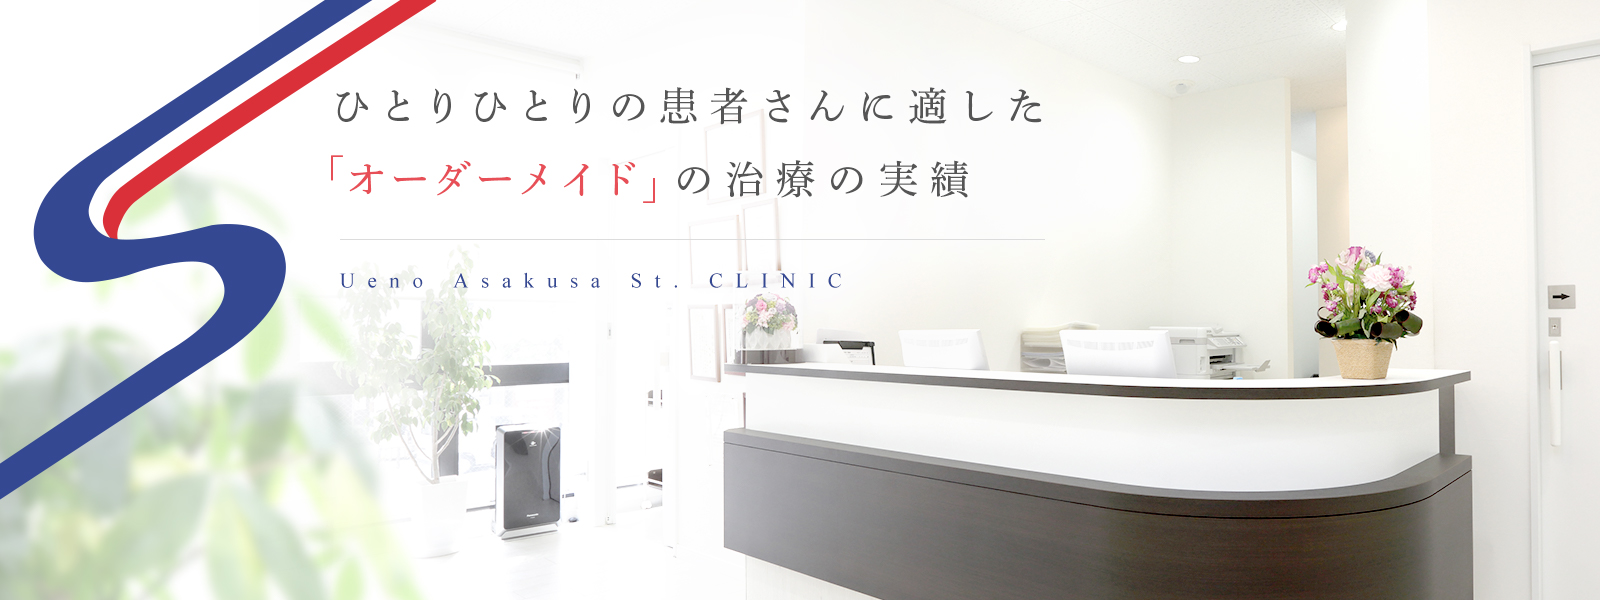 ひとりひとりの患者さんに適した「オーダーメイド」 の治療の実績 Ueno Asakusa St. CLINIC